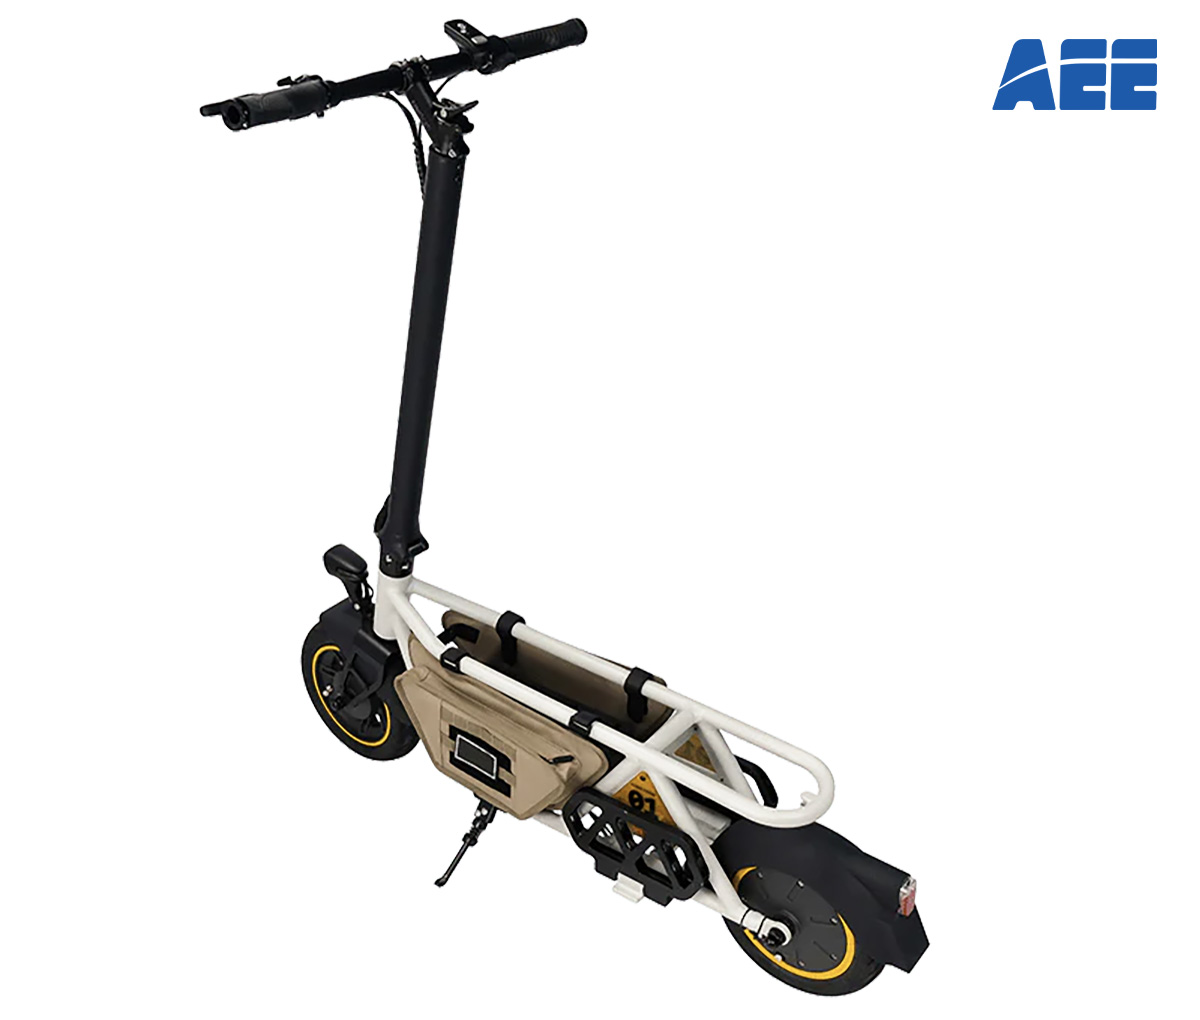 La versione safari del monopattino elettrico AEE Action Scooter 2023